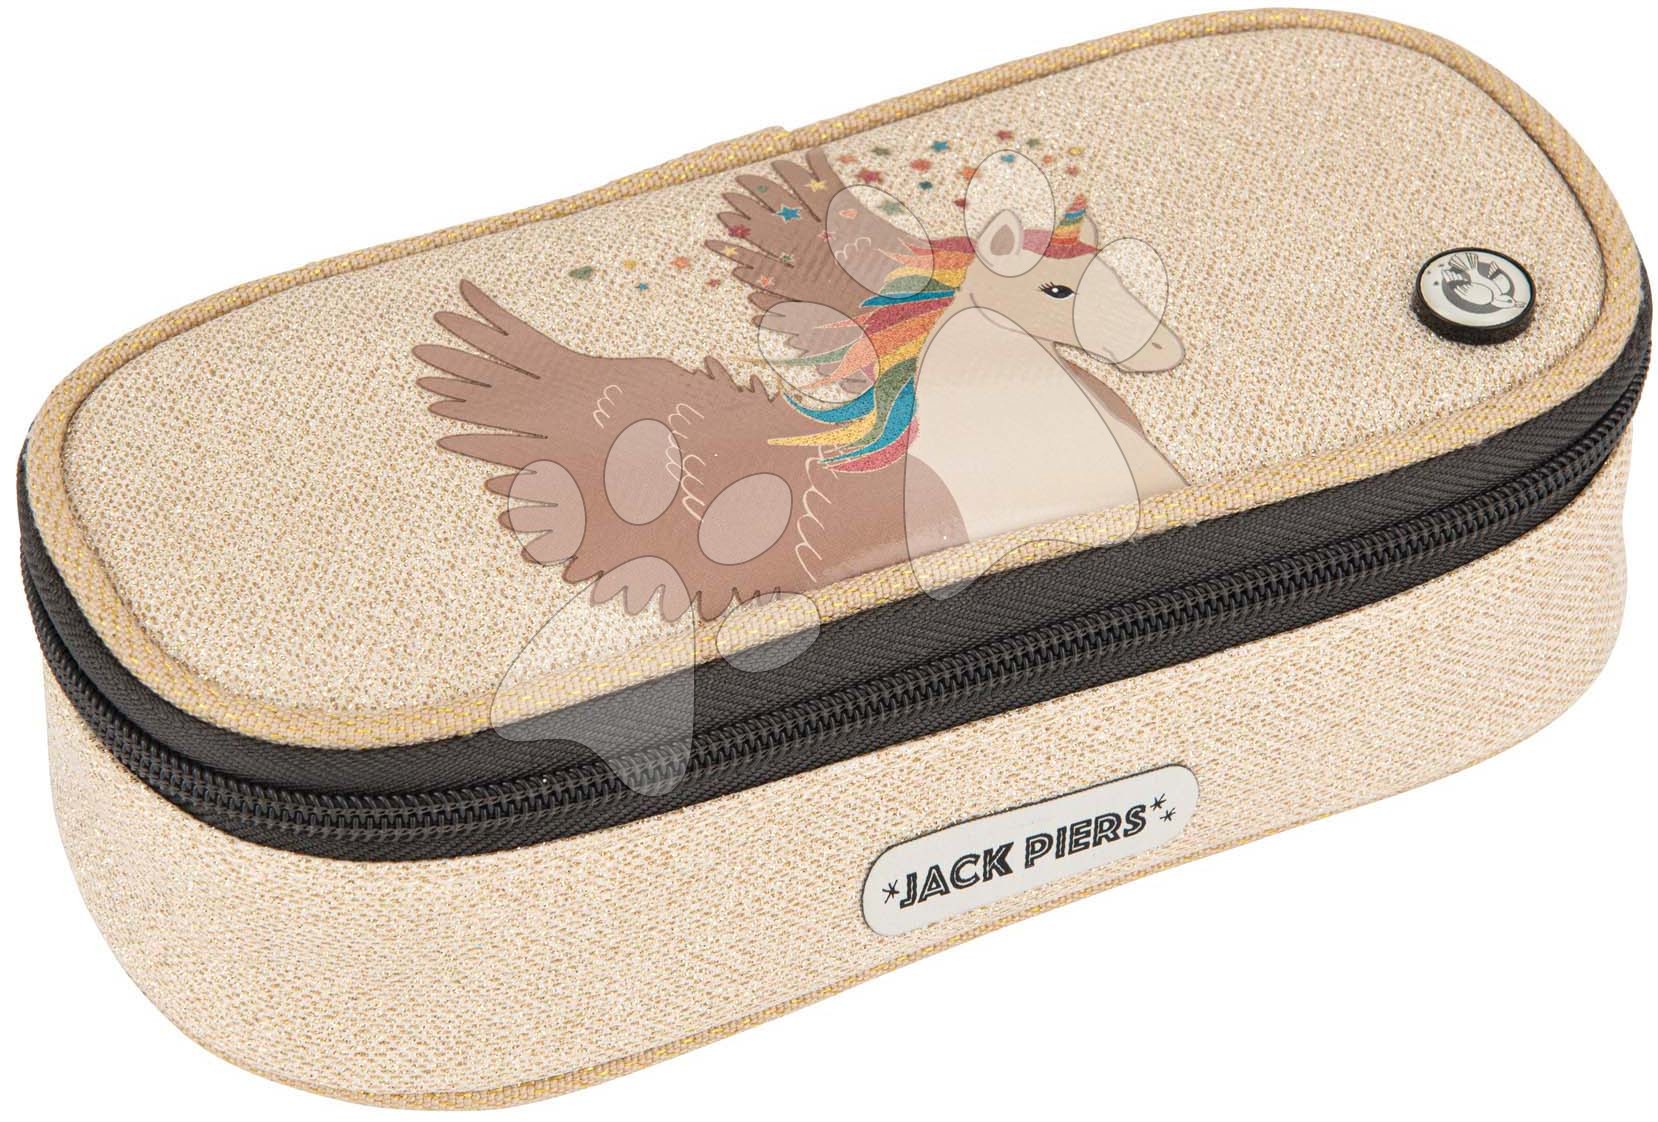 Tolltartó Pencil Case Unicorn Jack Piers ergonomikus luxus kivitel 2 évtől  20*6*9 cm Baba játék webáruház - játék rendelés online